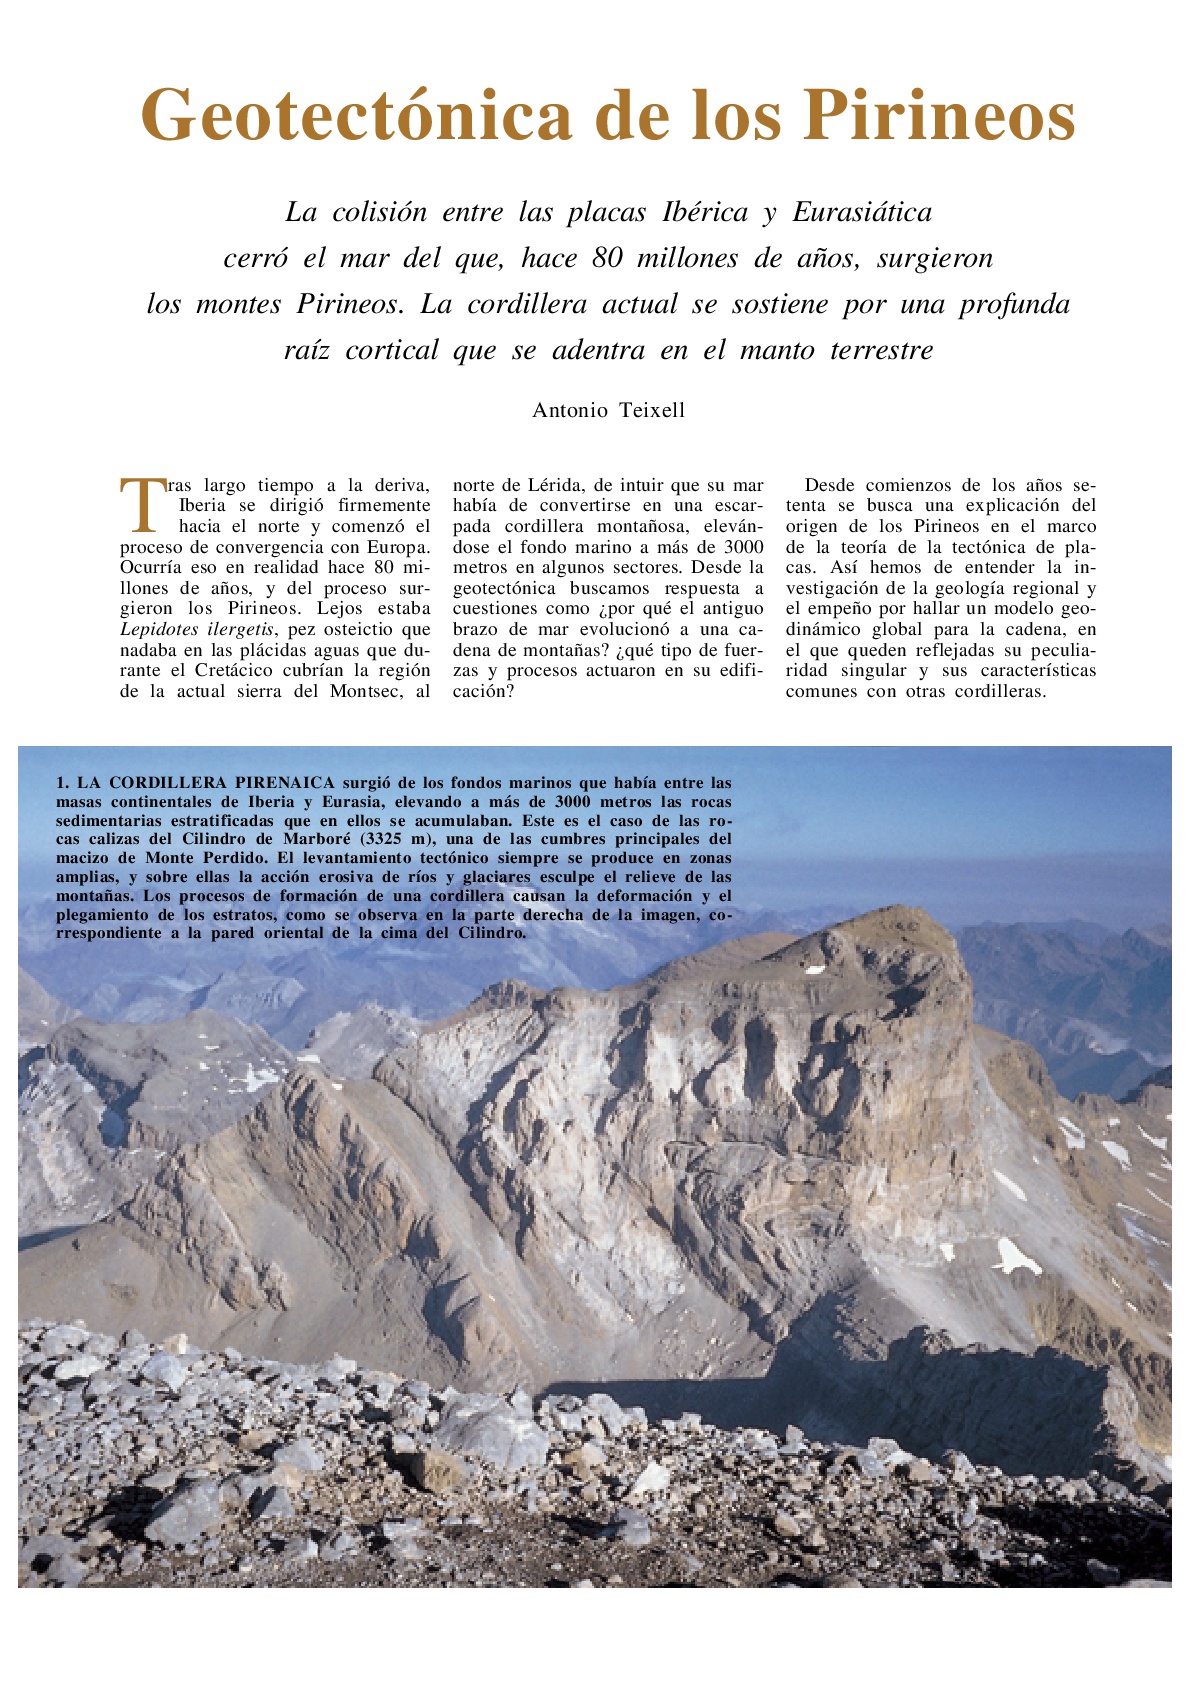 Geotectonica-de-los-Pirineos-001